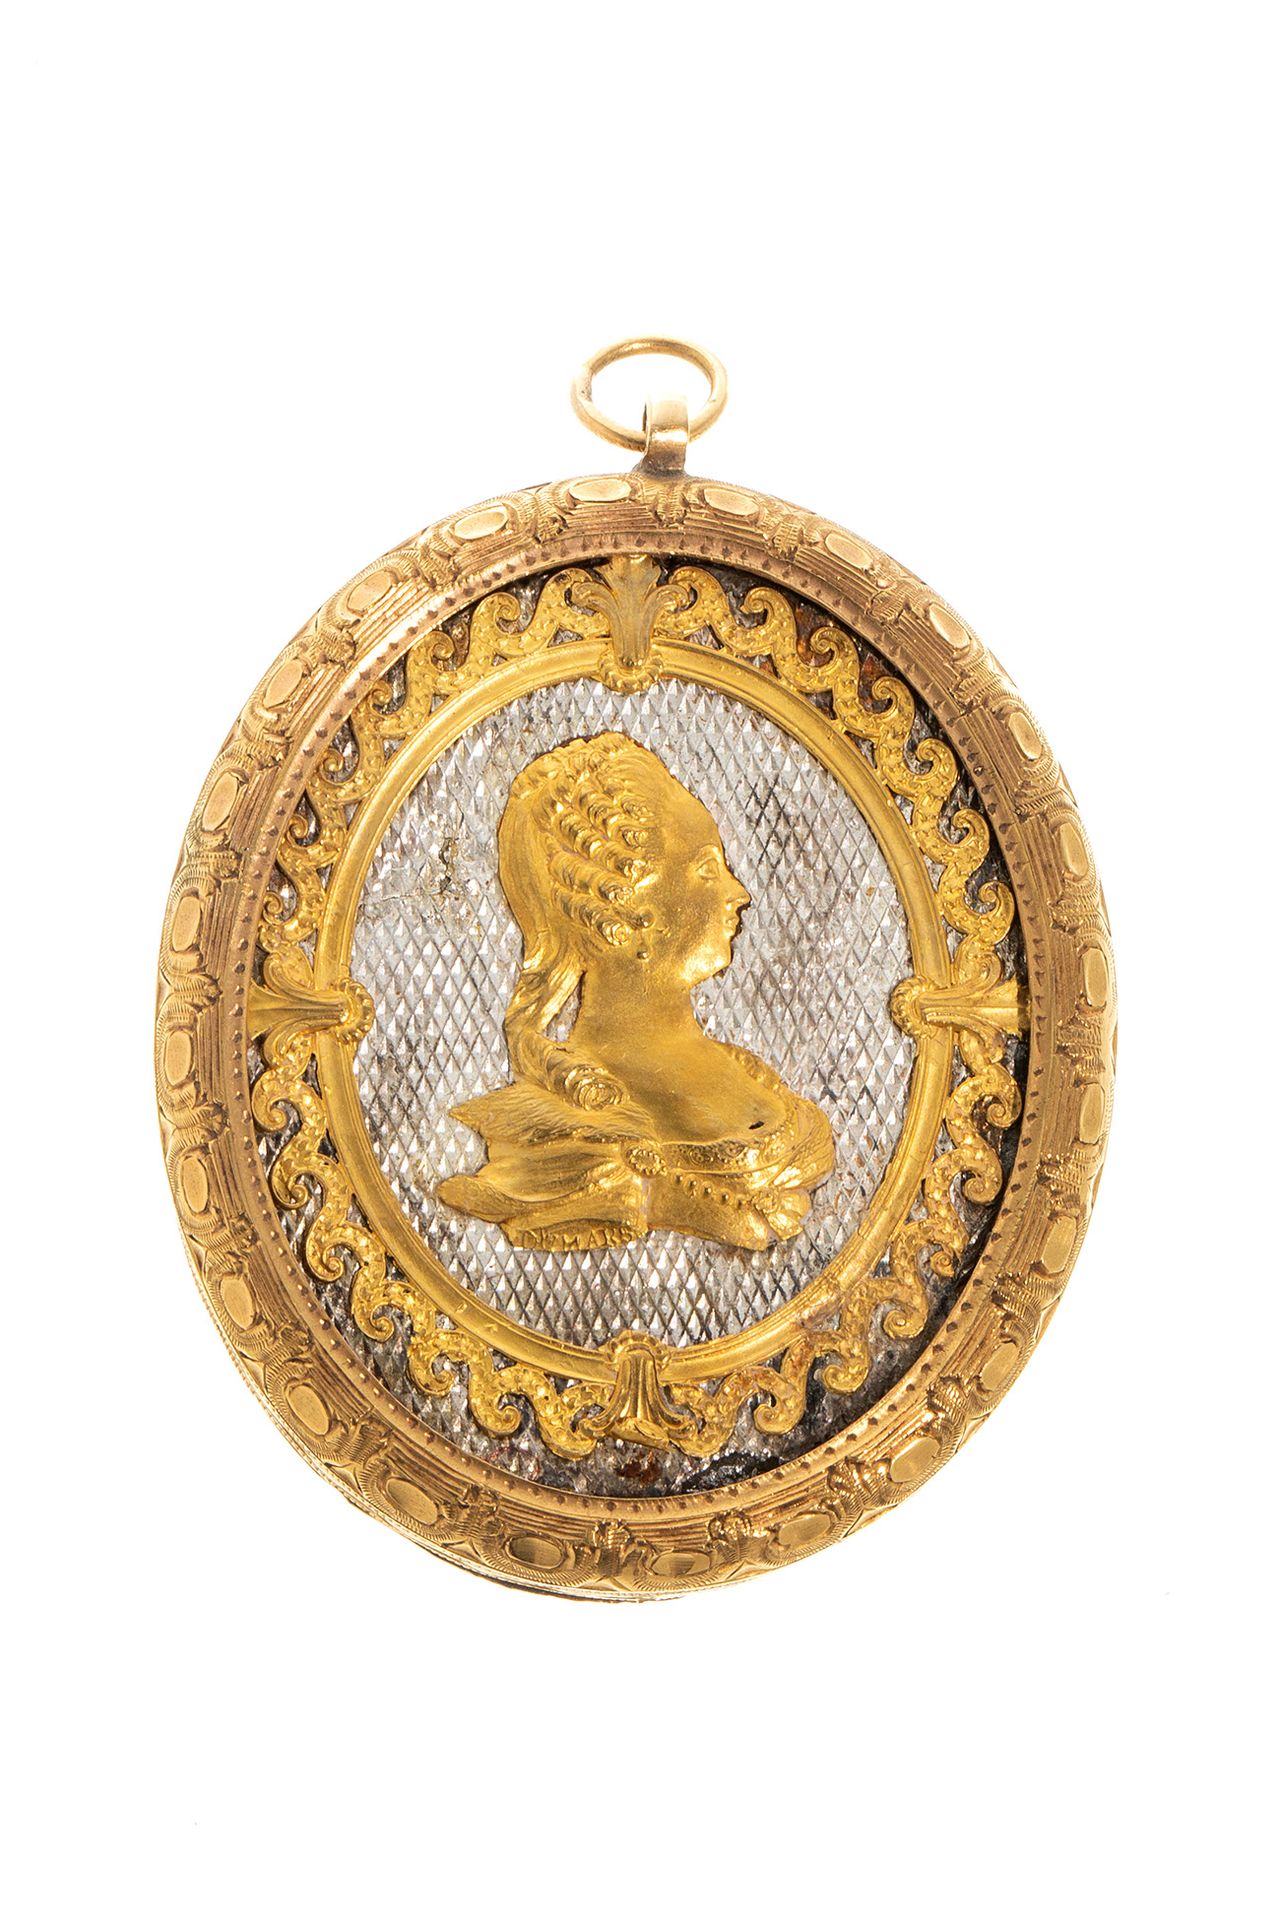 18kt gold cameo medallion pendant. Ciondolo a medaglione in oro 18kt.
Il cammeo &hellip;